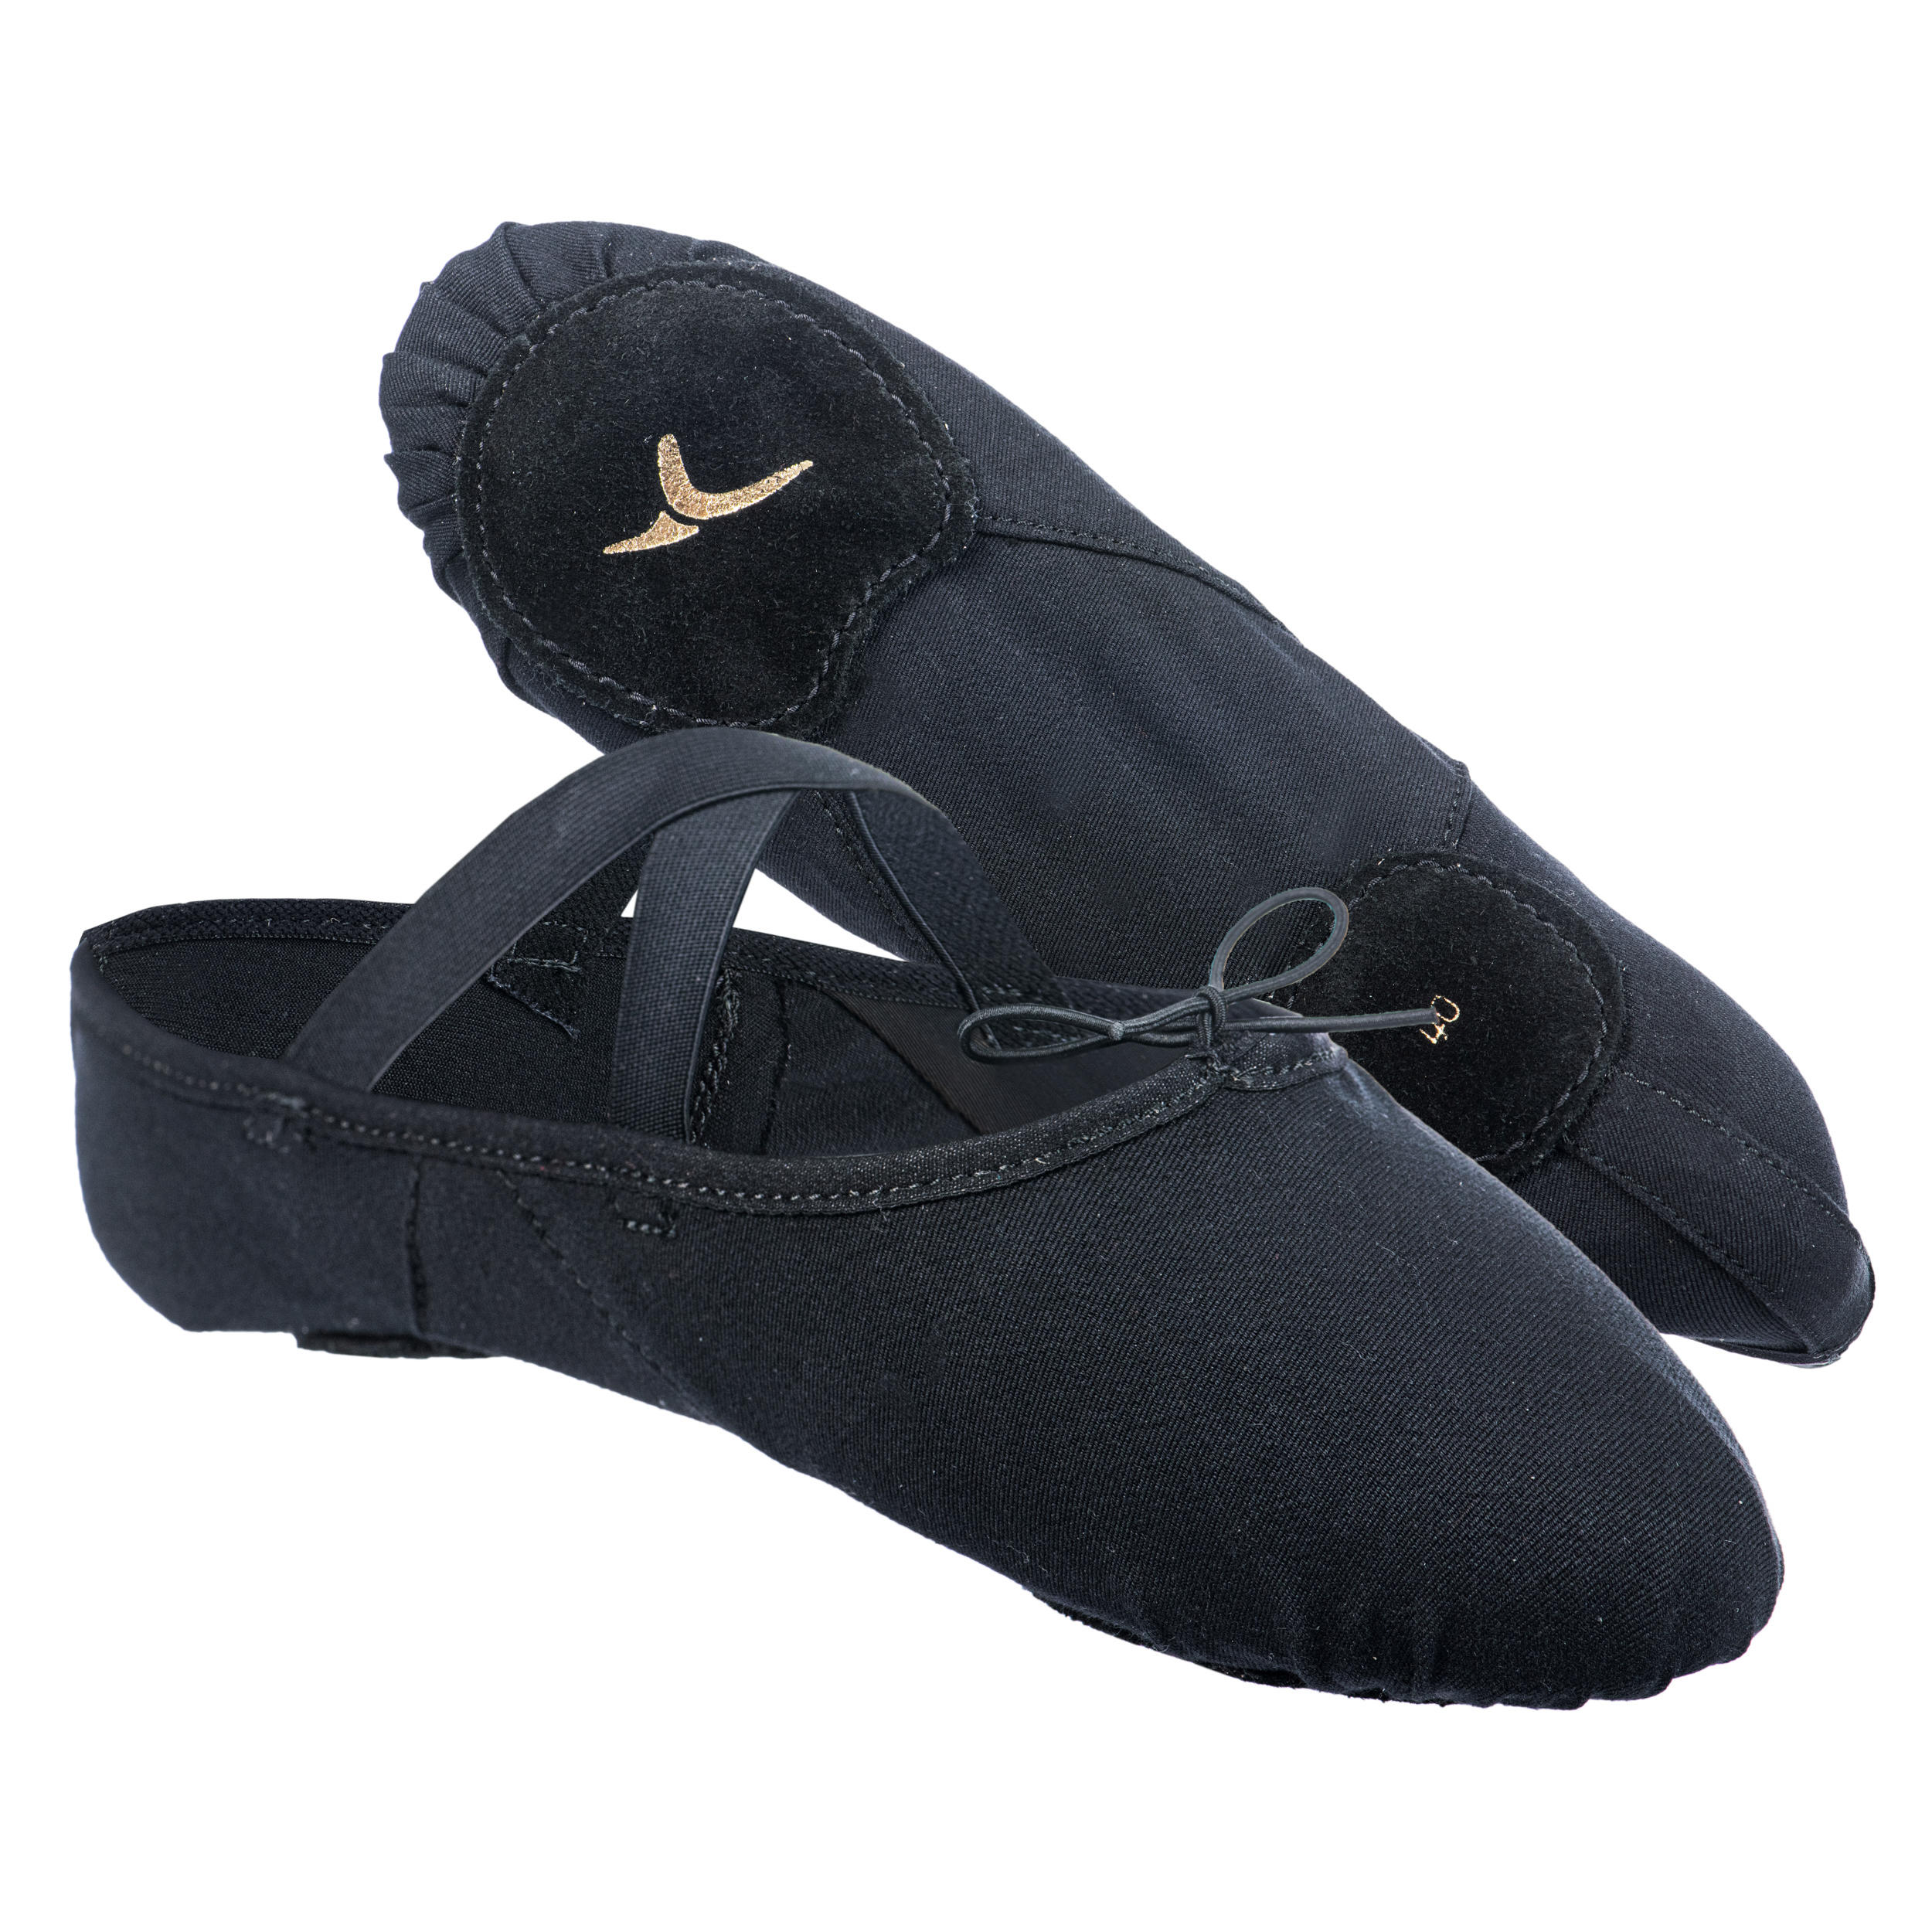 Split-Sole Stretch Canvas Demi-Pointe Ballet Shoes - Black 4/5